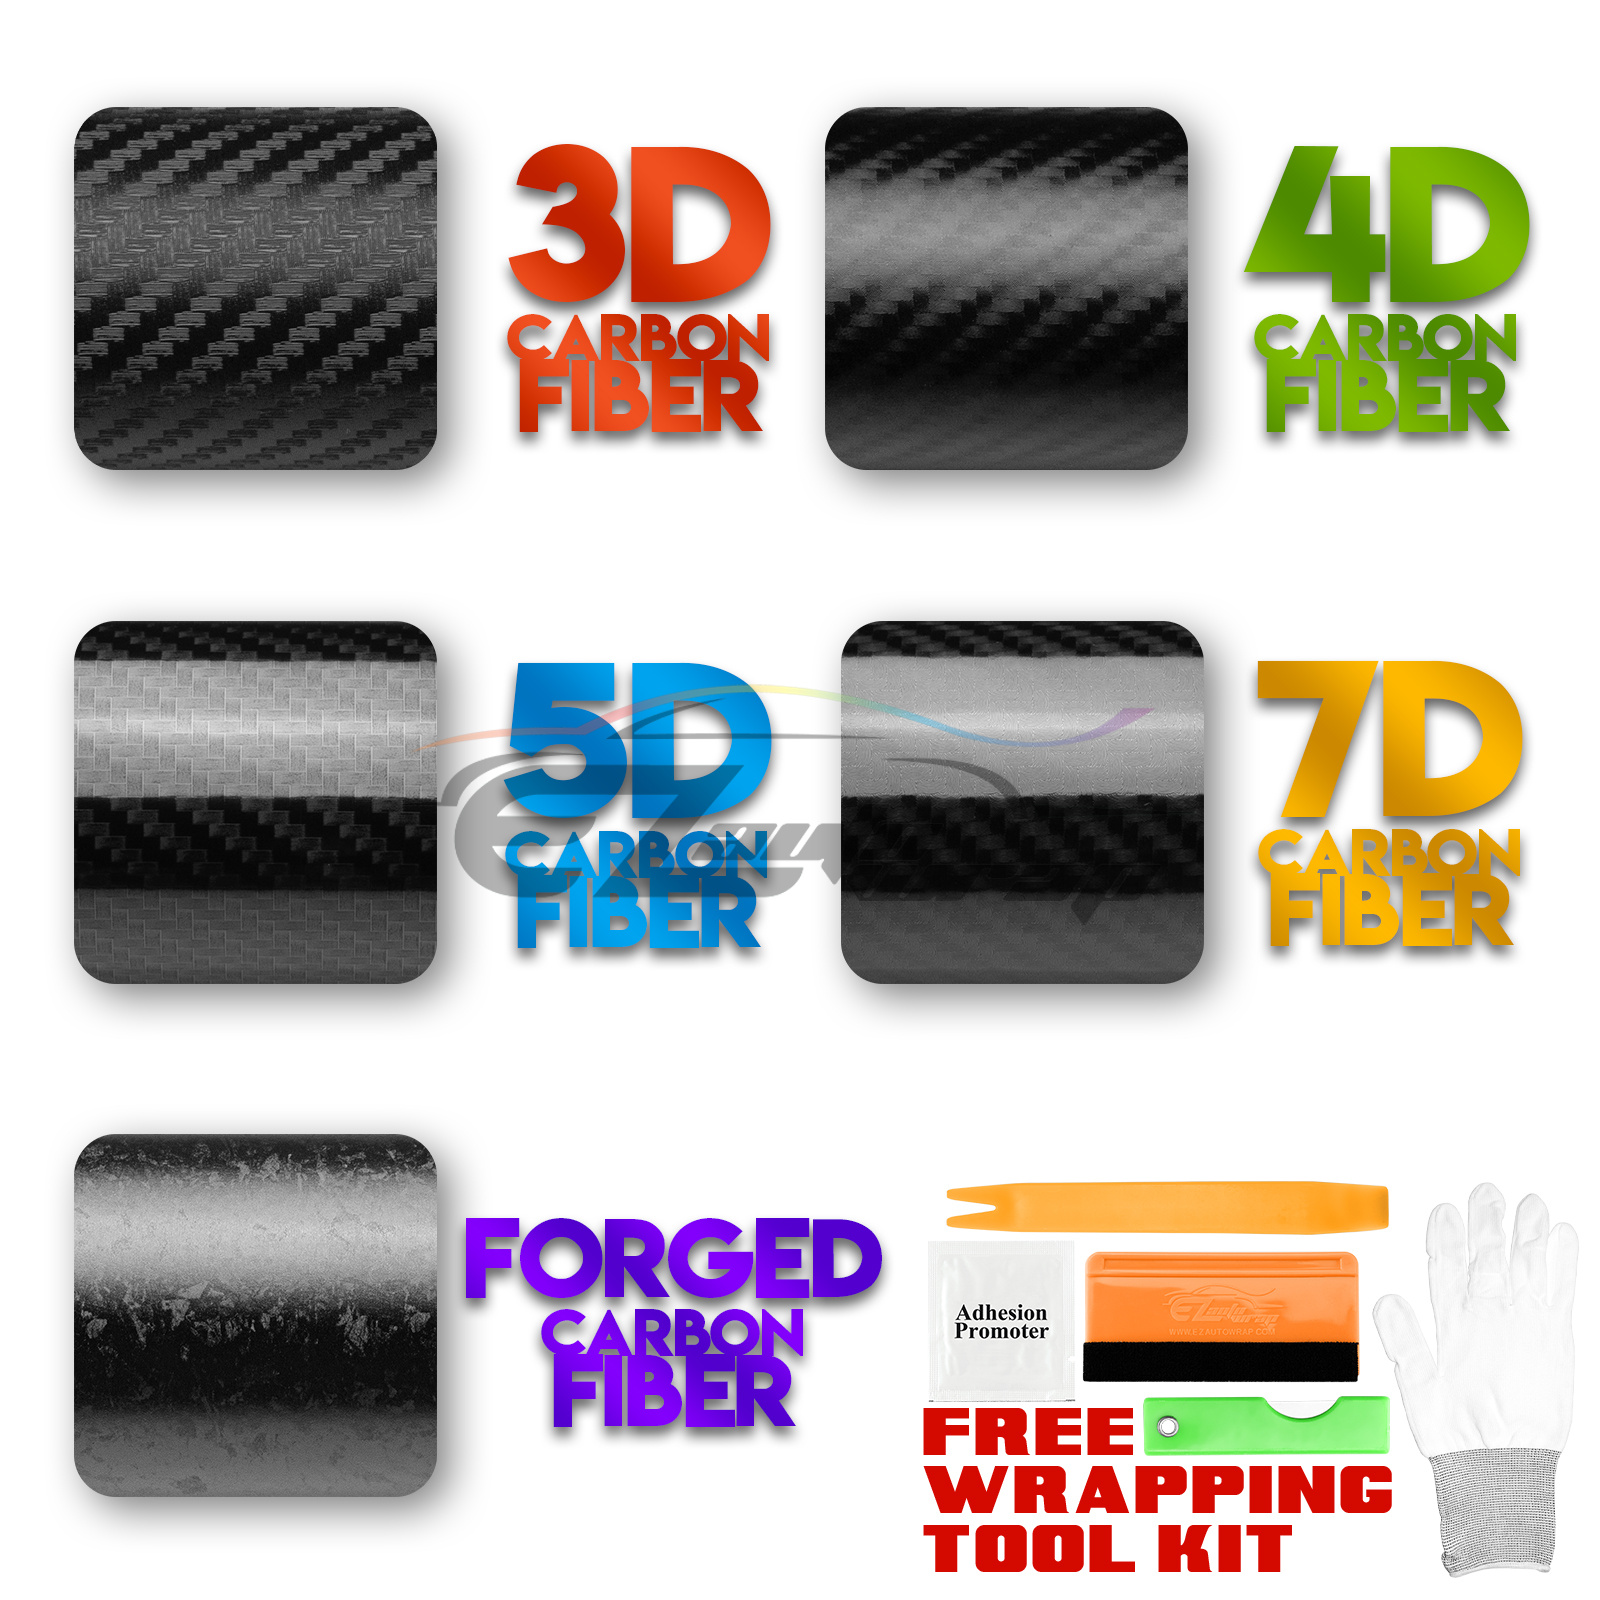 carbon fiber 3d vs 4d